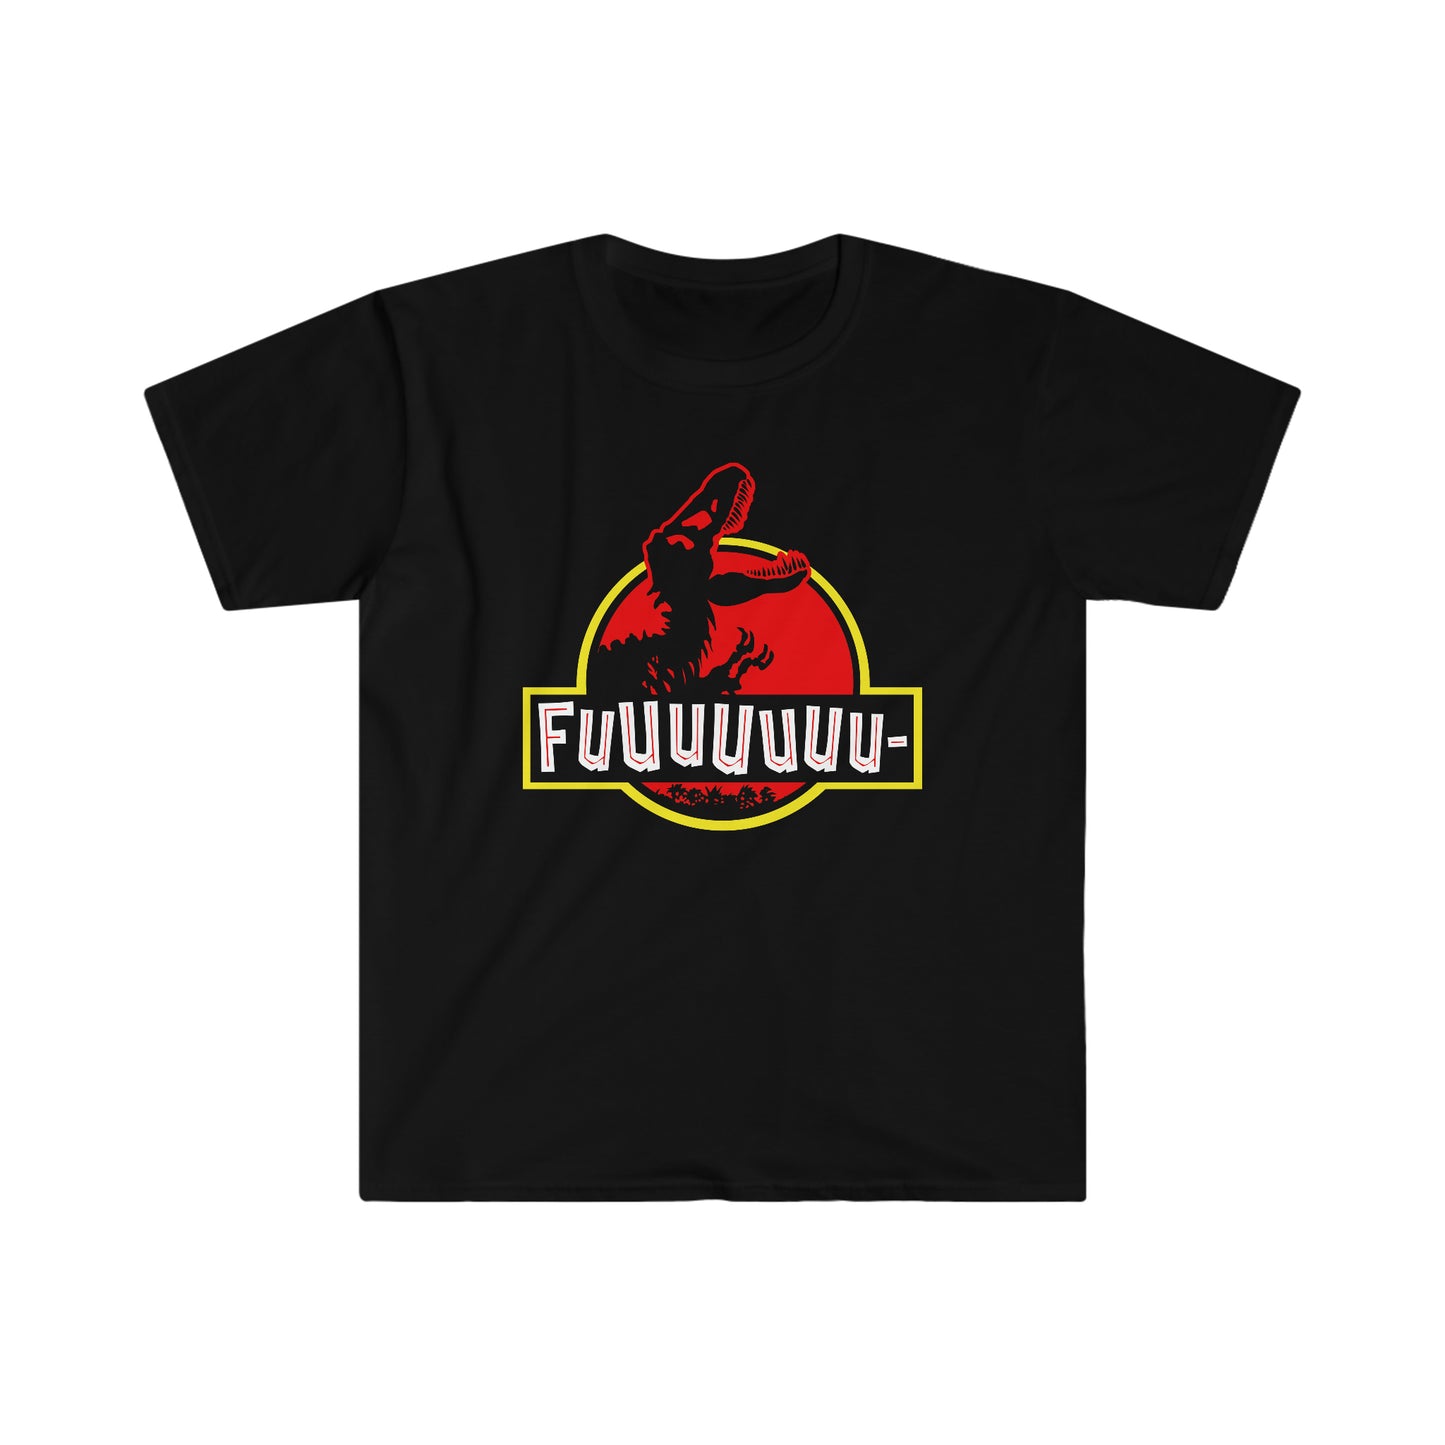 FUUUUUUU- PARK t-shirt